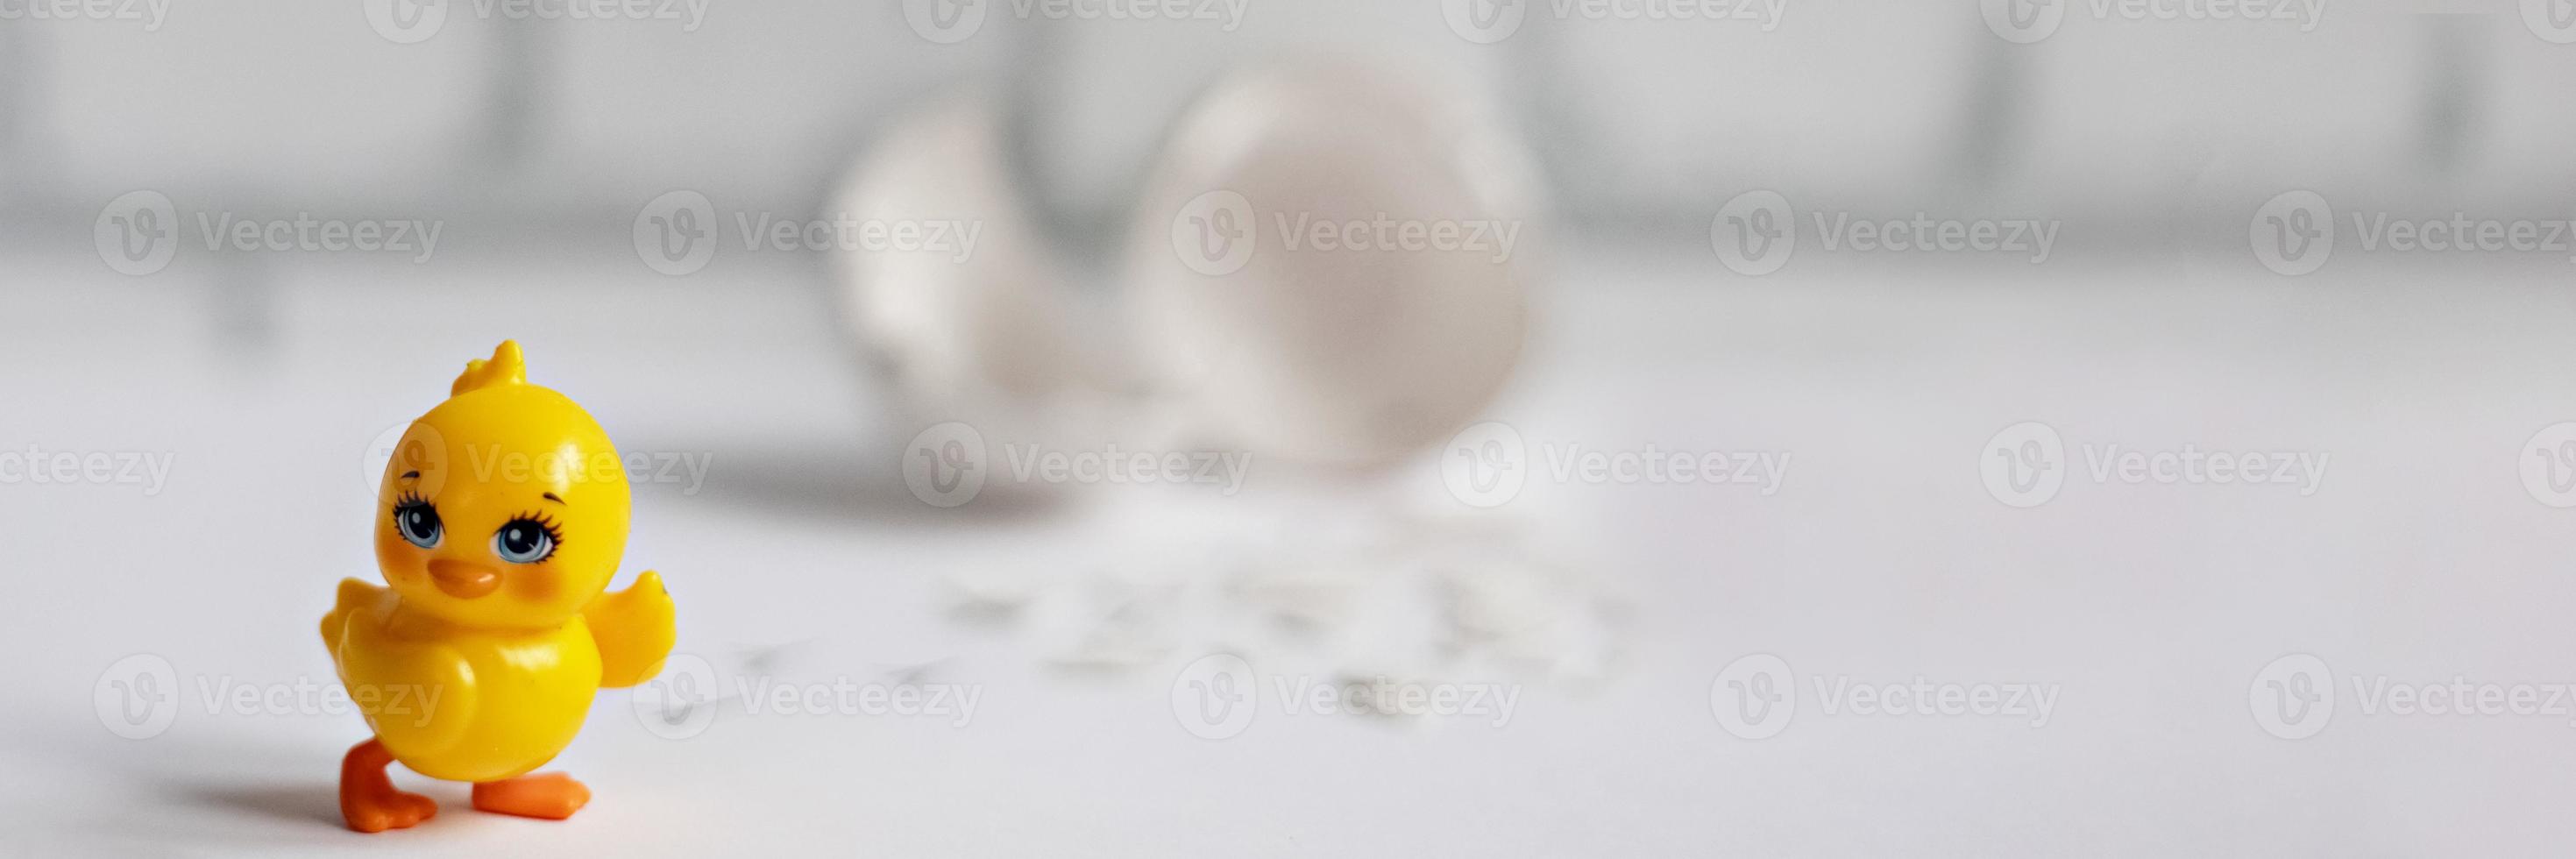 witte eierschaal van een gebroken kippenei met fragmenten en een uitgebroede kip geïsoleerd. pasen.banner foto